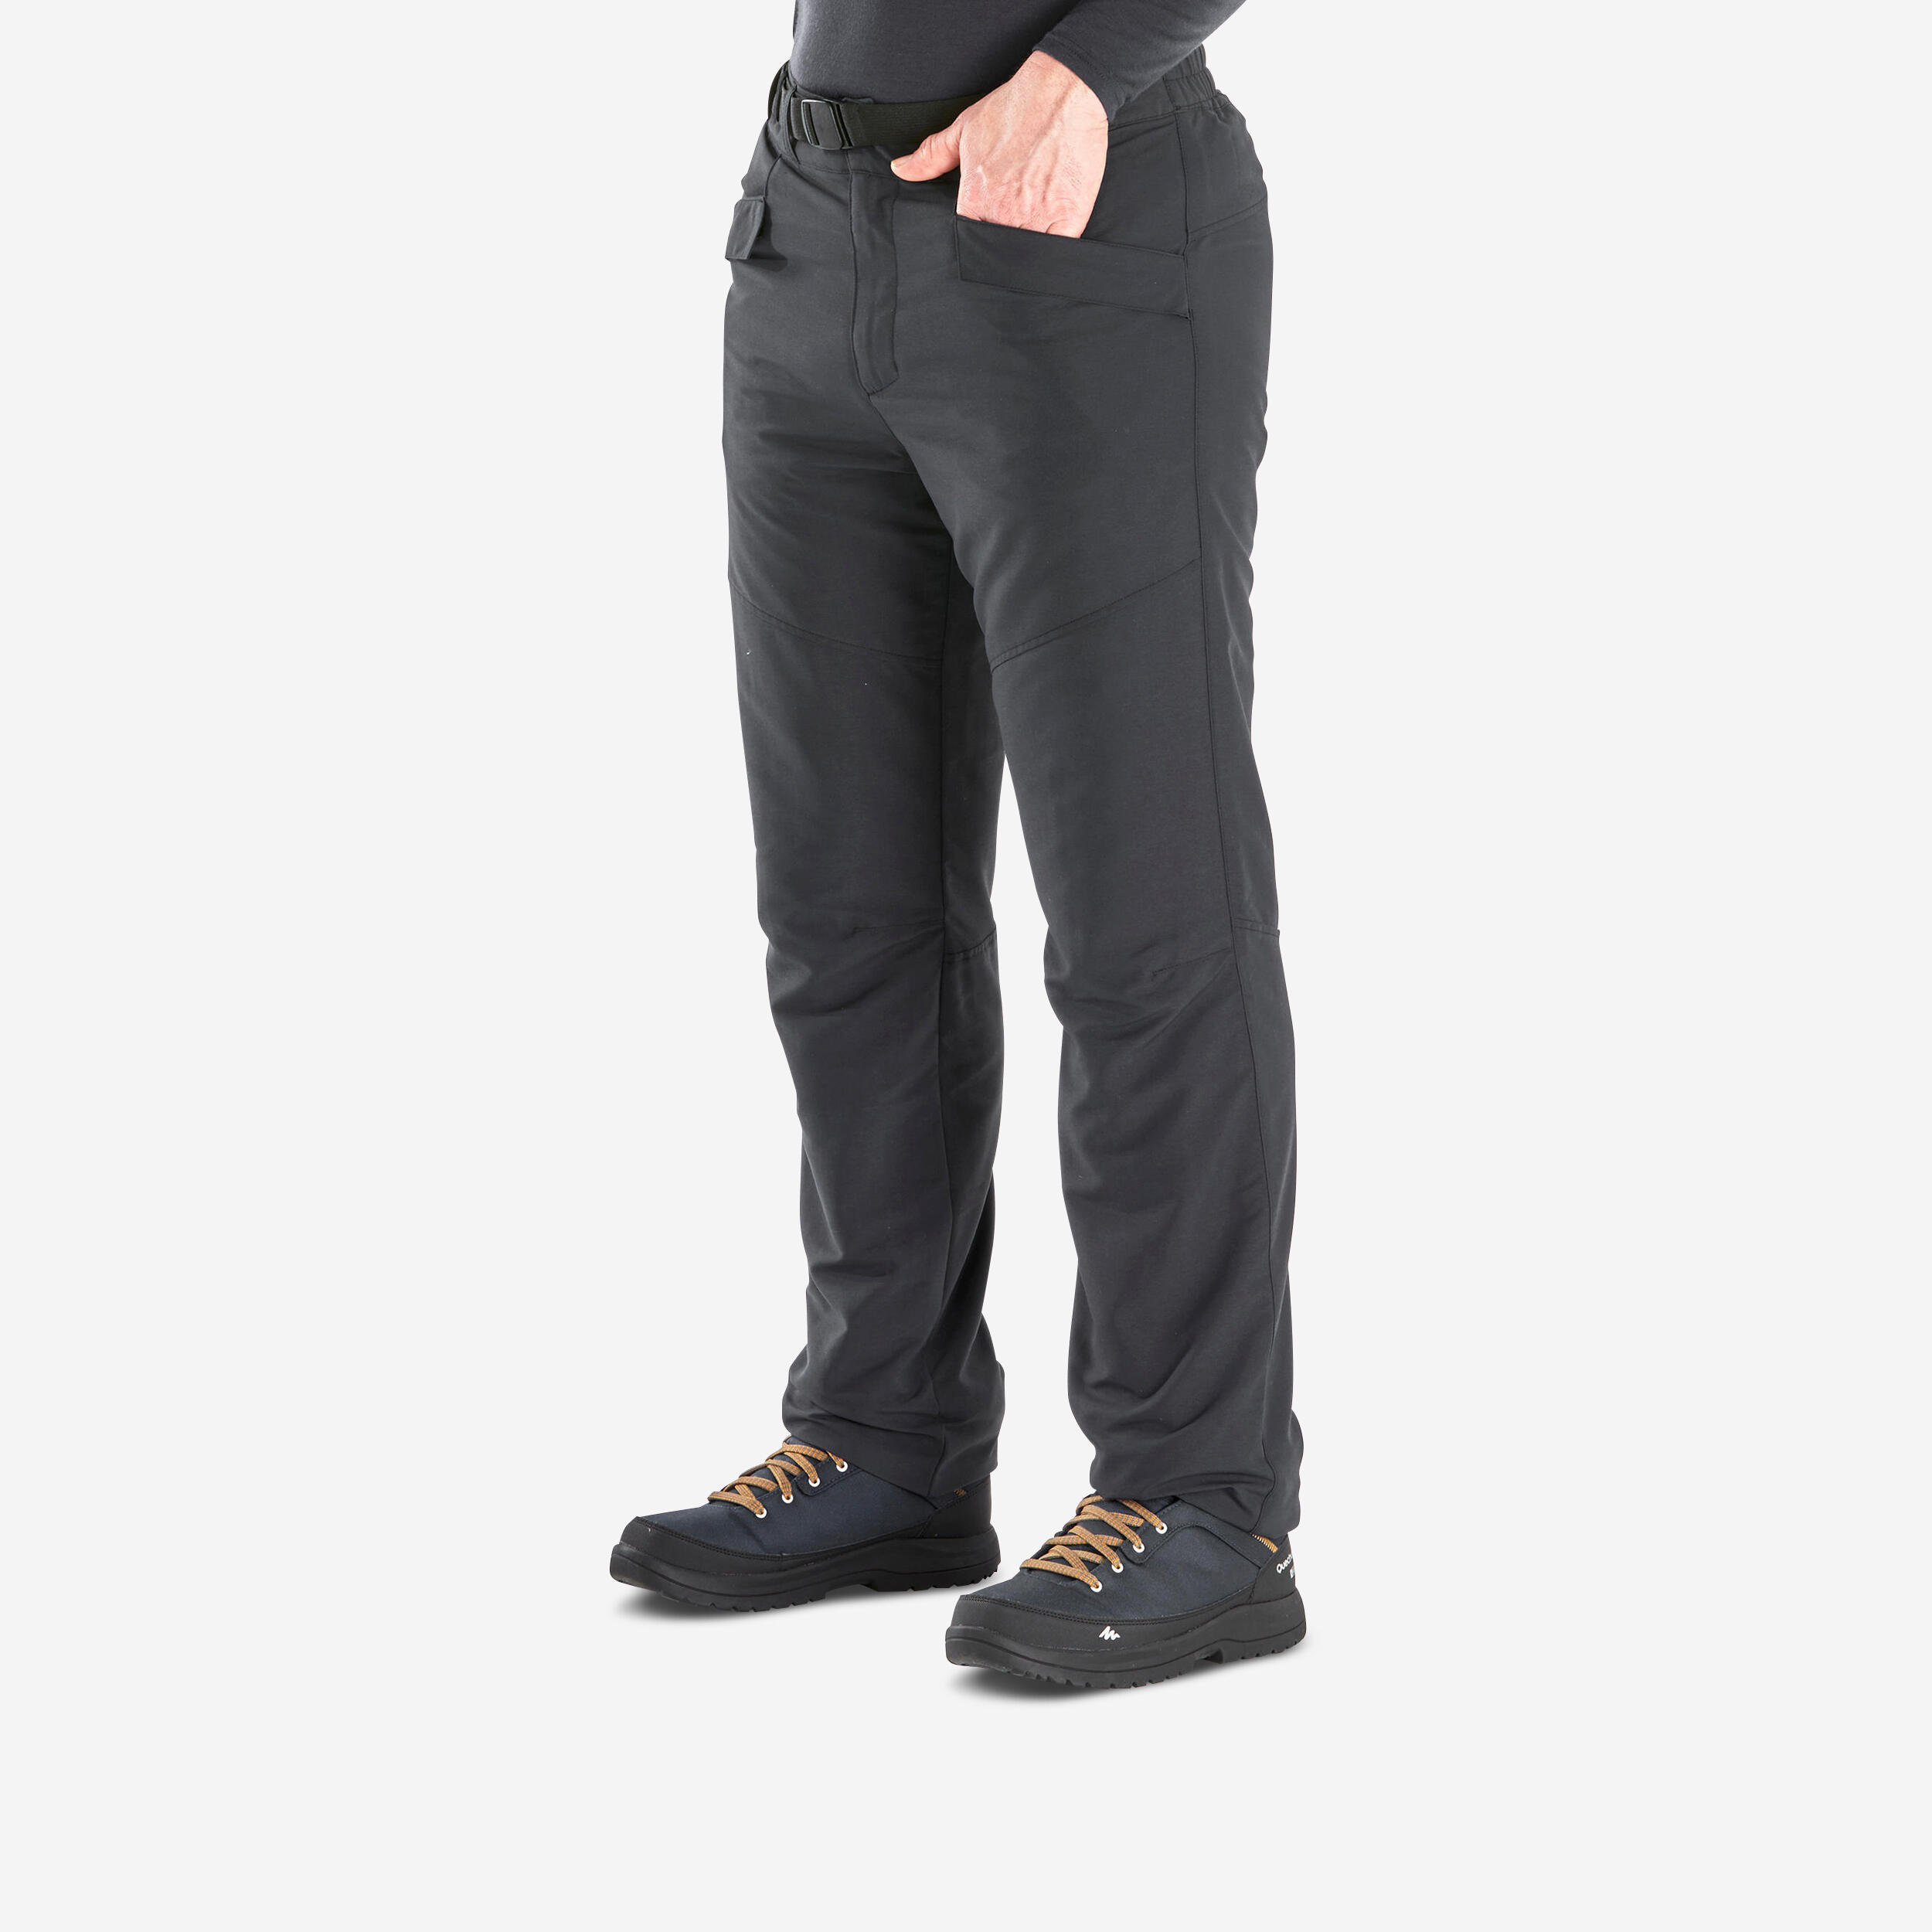 Brandit Dungarees Men's Trousers Thermal Work Casual Black | eBay